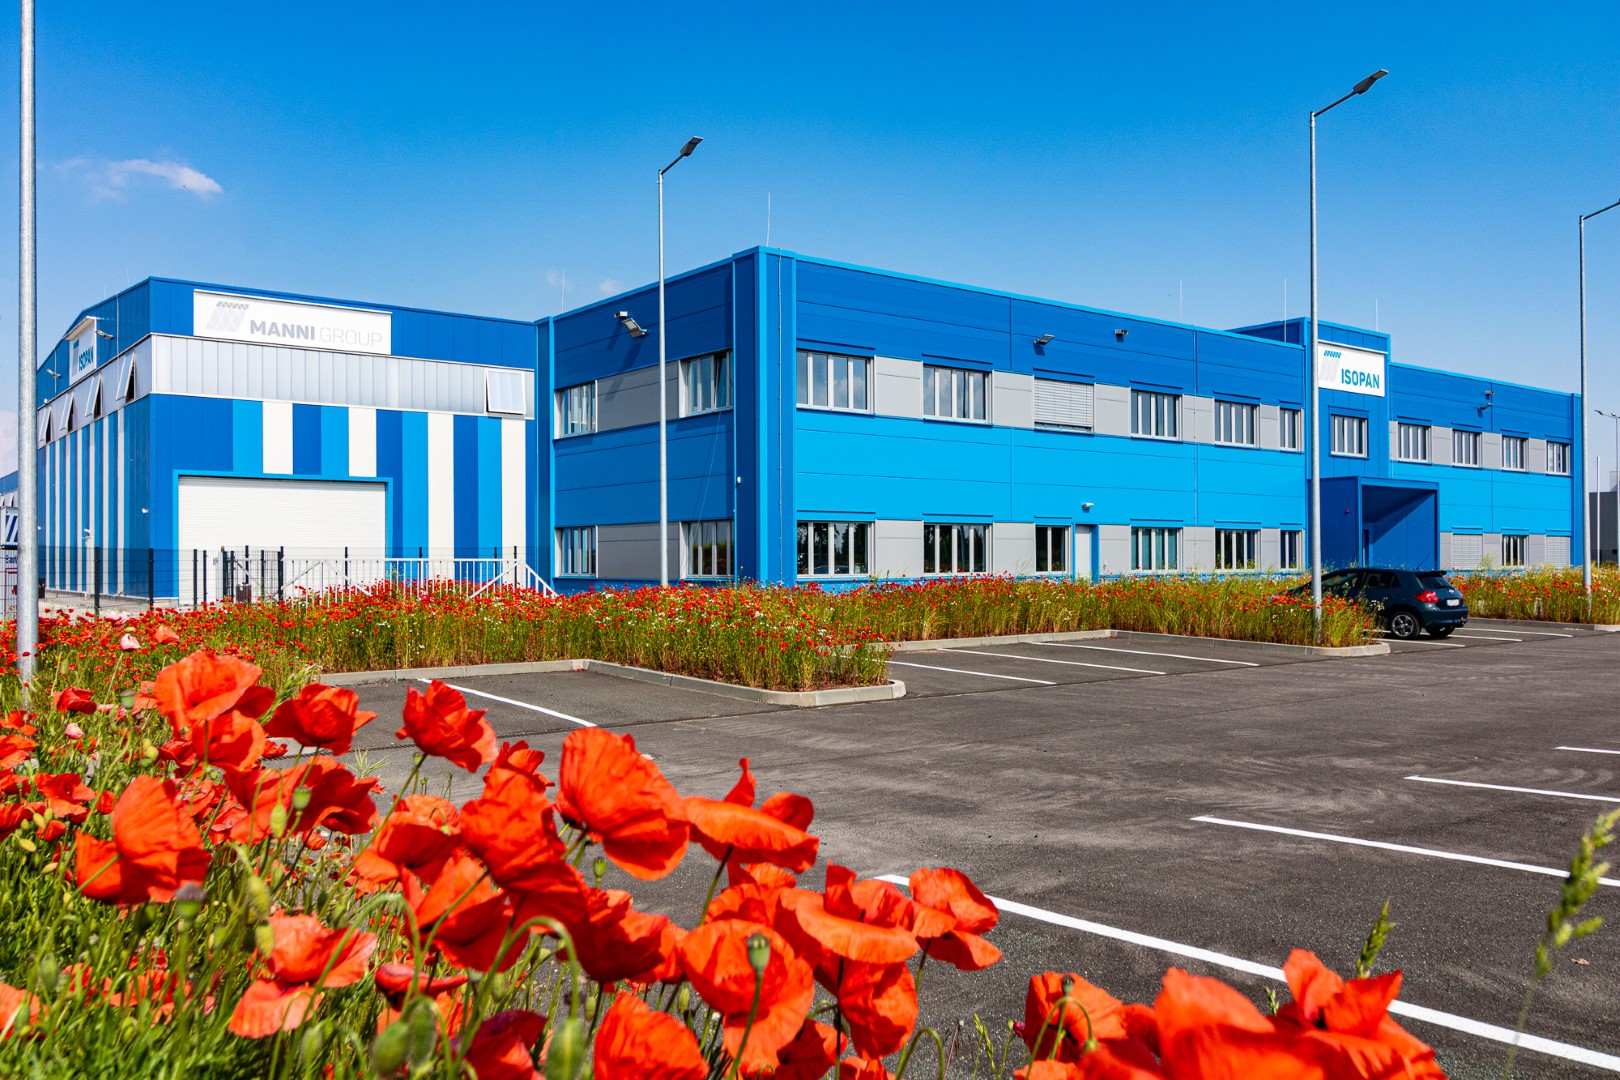 Nueva planta de producción de Isopan en el polígono industrial Starpark Halle (Alemania)